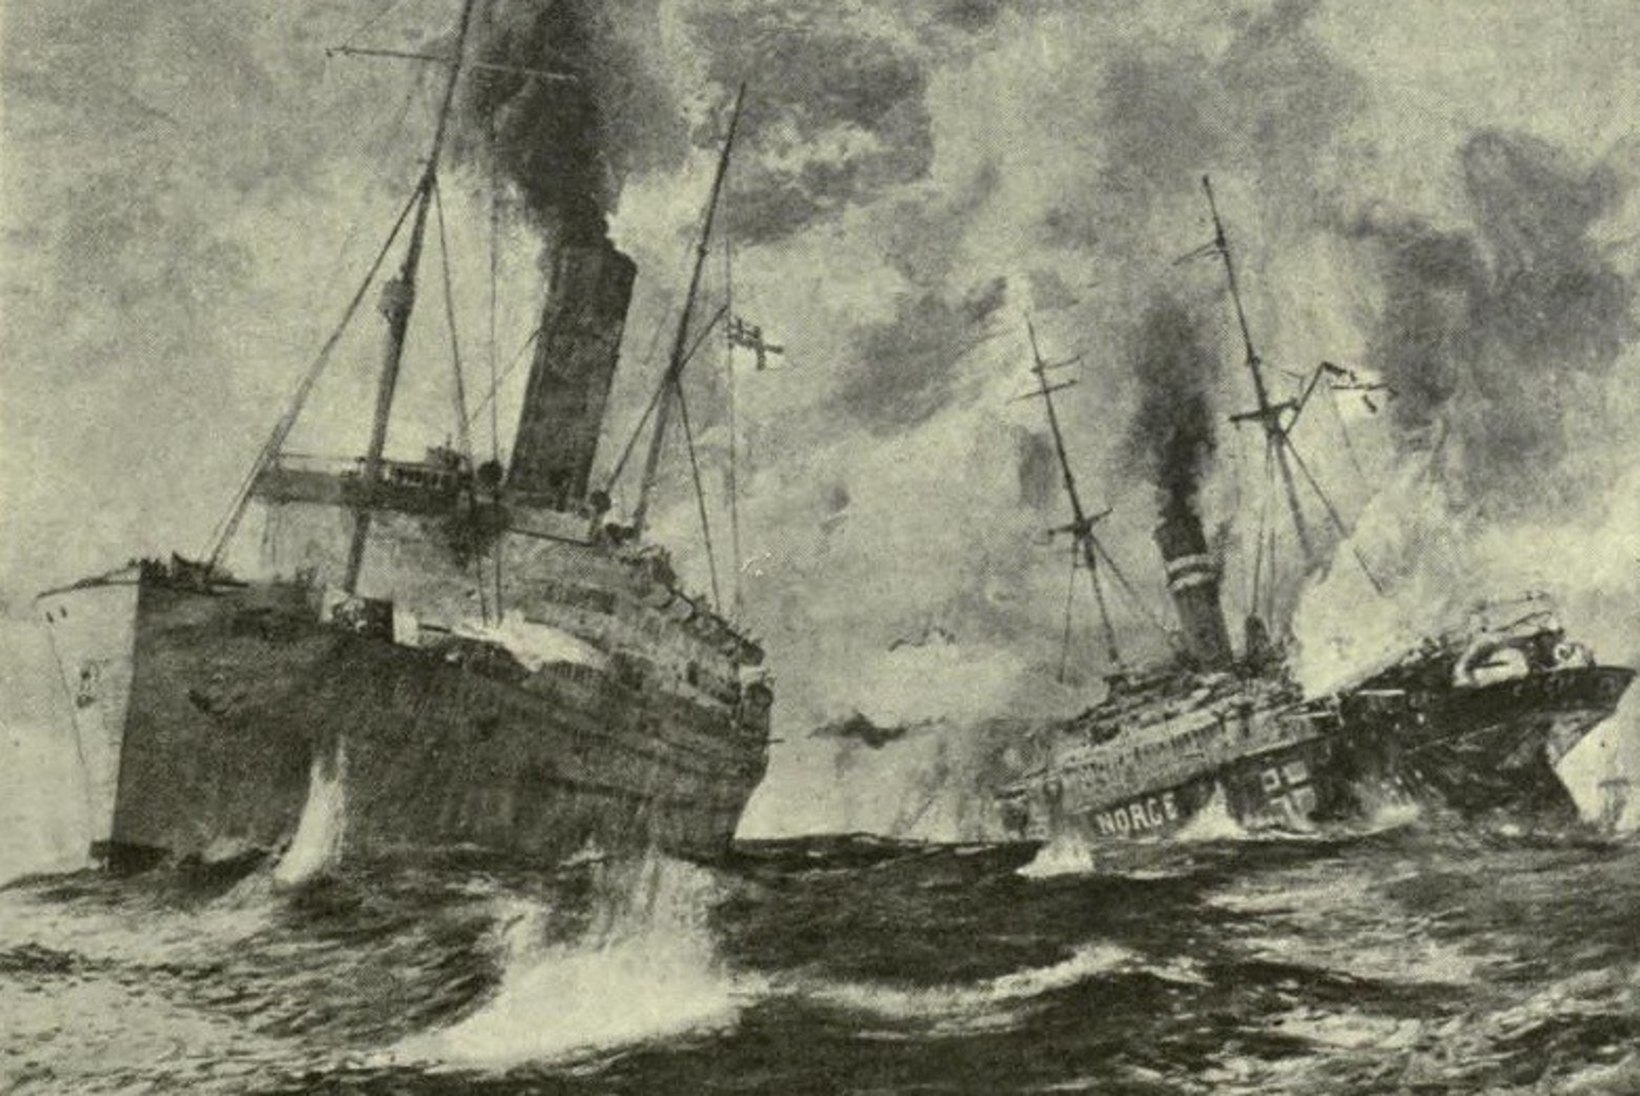 MINEVIKUHETK | 29. veebruar: Põhjamerel peetud merelahingus uppus kaks laeva